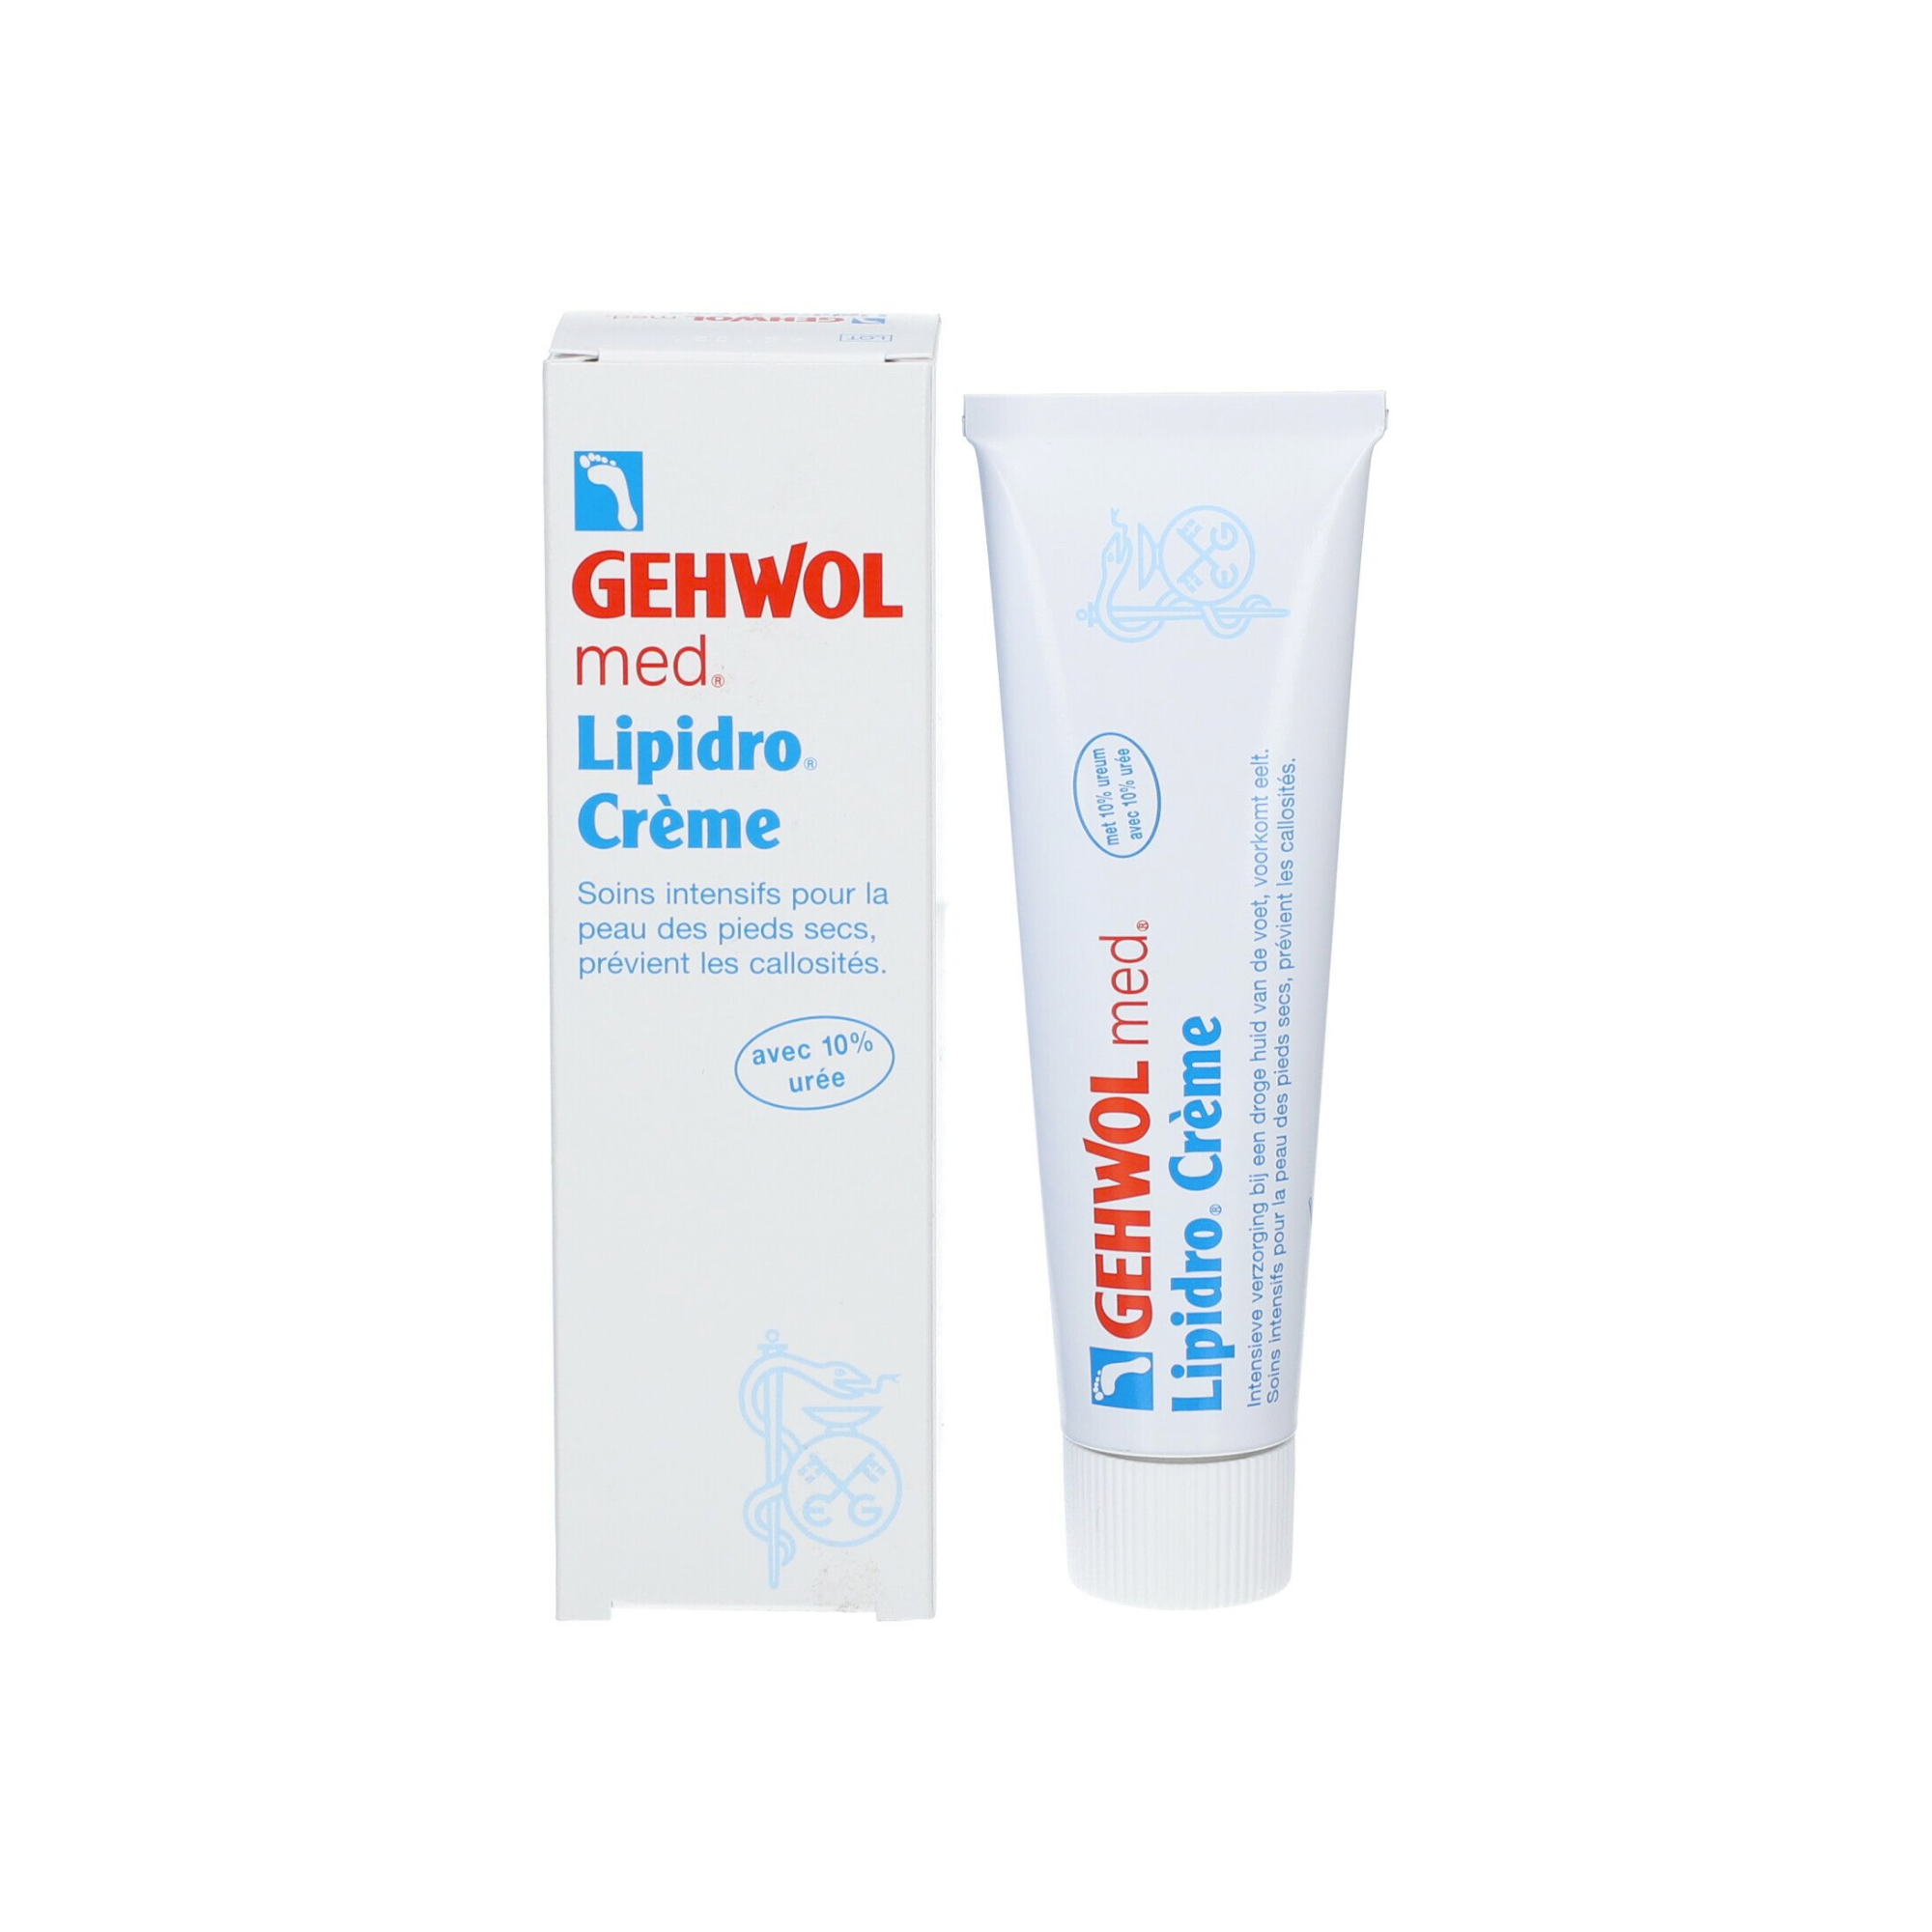 Gehwol - Crème lipidro rafraîchissante pour pieds très secs - 1 tube de 75 ml 